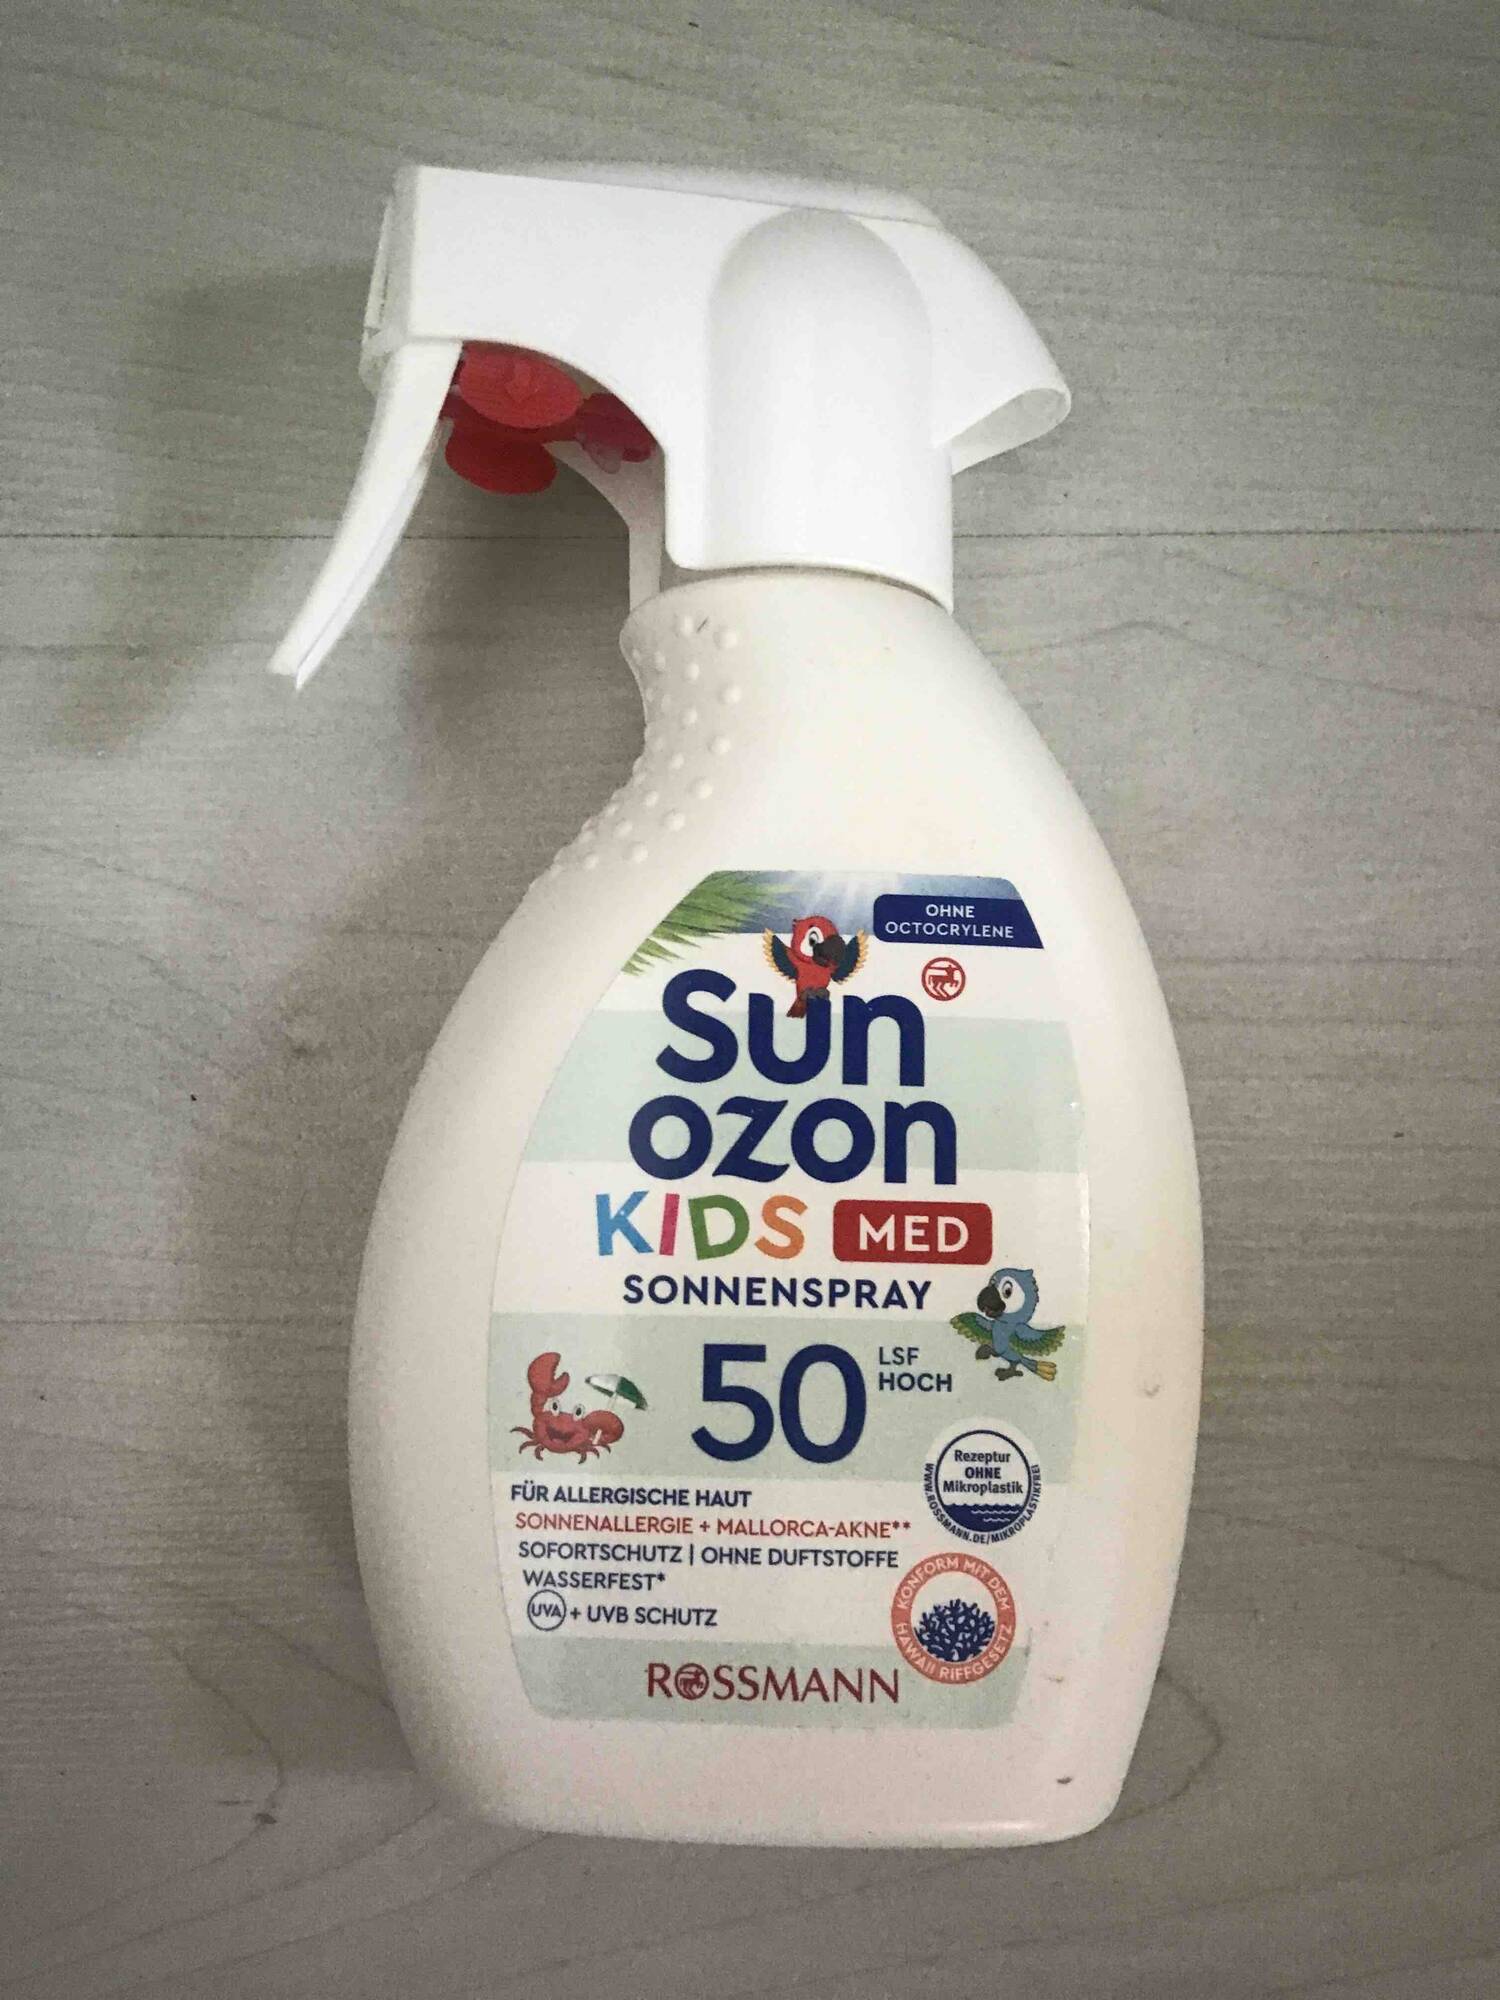 ROSSMANN - Sun ozon - Kids med sonnenspray SPF 50